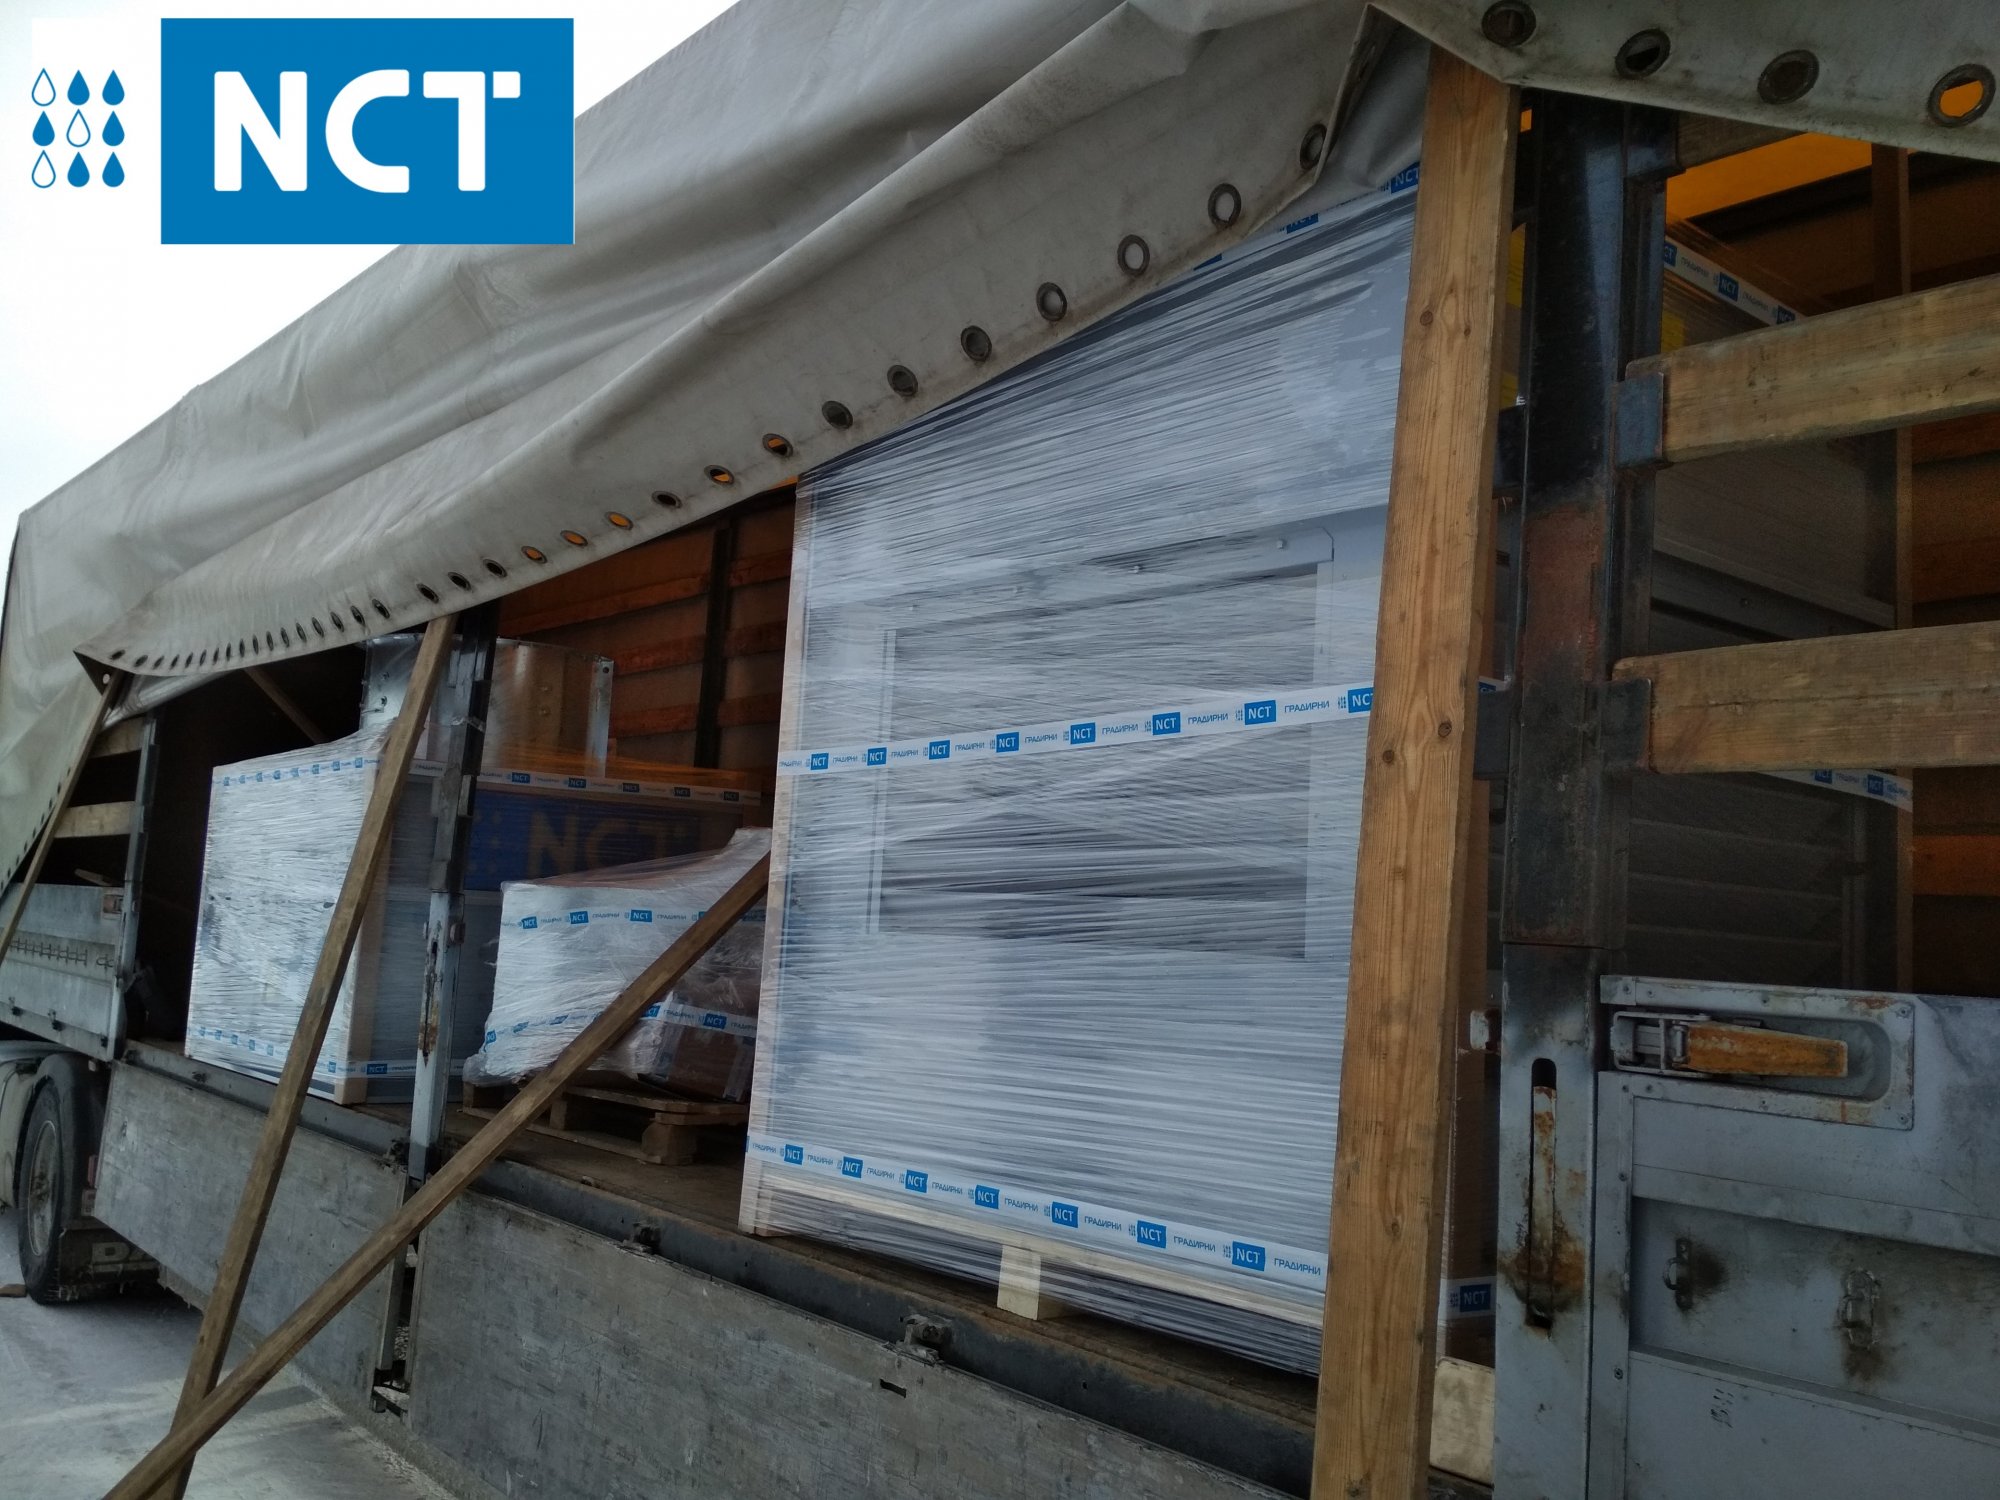 Поставлена мокрая вентиляторная градирня NCT в специальном исполнении для производителя радиаторов из литого алюминия и стали - «SAS Industrial».